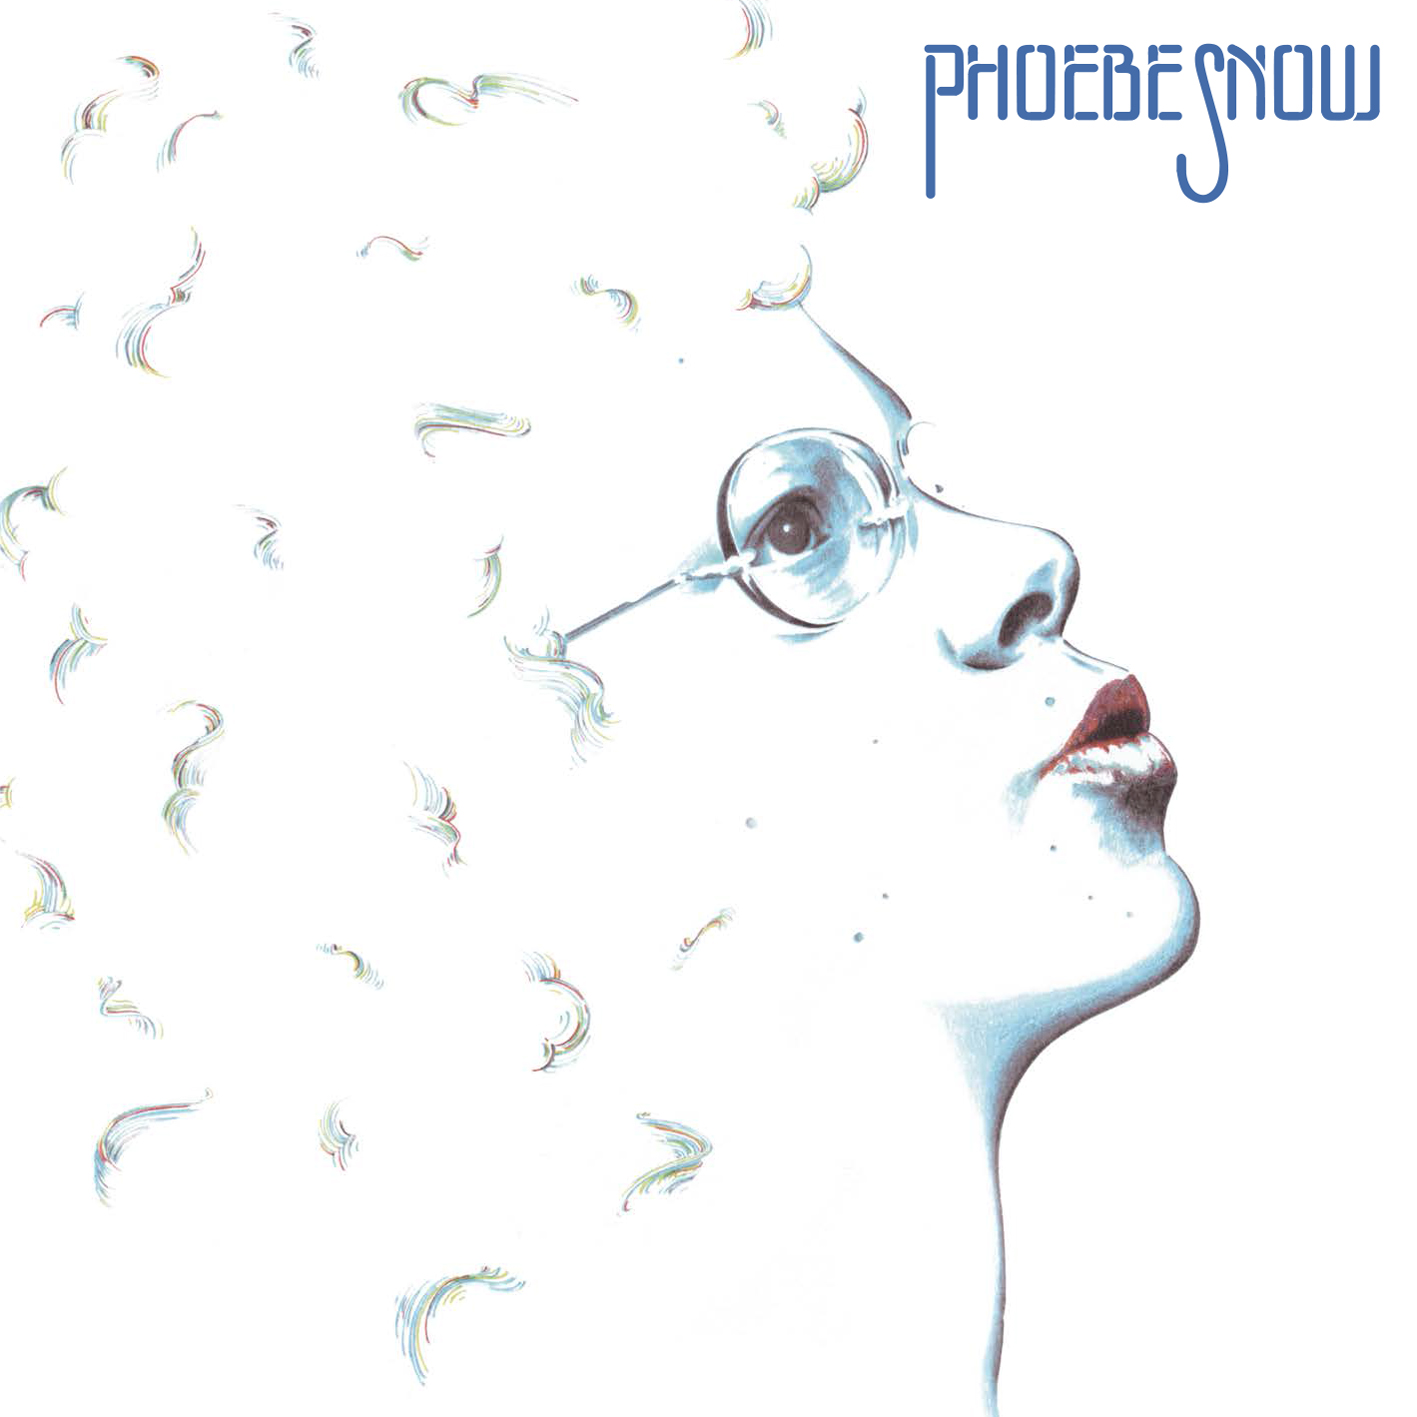 Phoebe Snow - Phoebe Snow (1974/2013) [AcousticSounds DSF DSD64/2.82MHz + FLAC 24bit/88,2kHz]